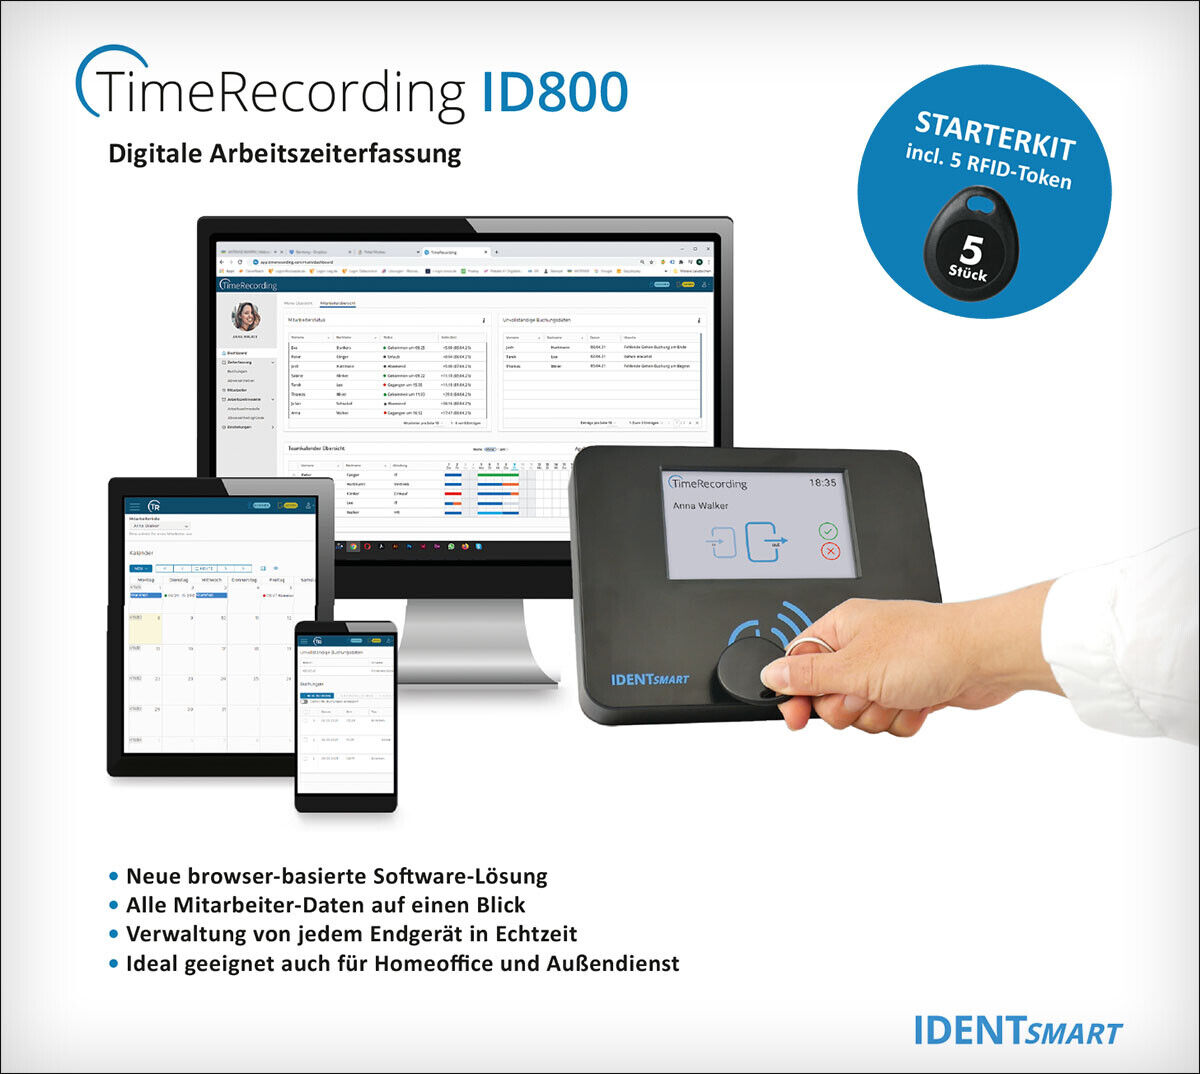 IDENTsmart TimeRecording - ID800 Starterkit mit 5 Token *erweiterbar*